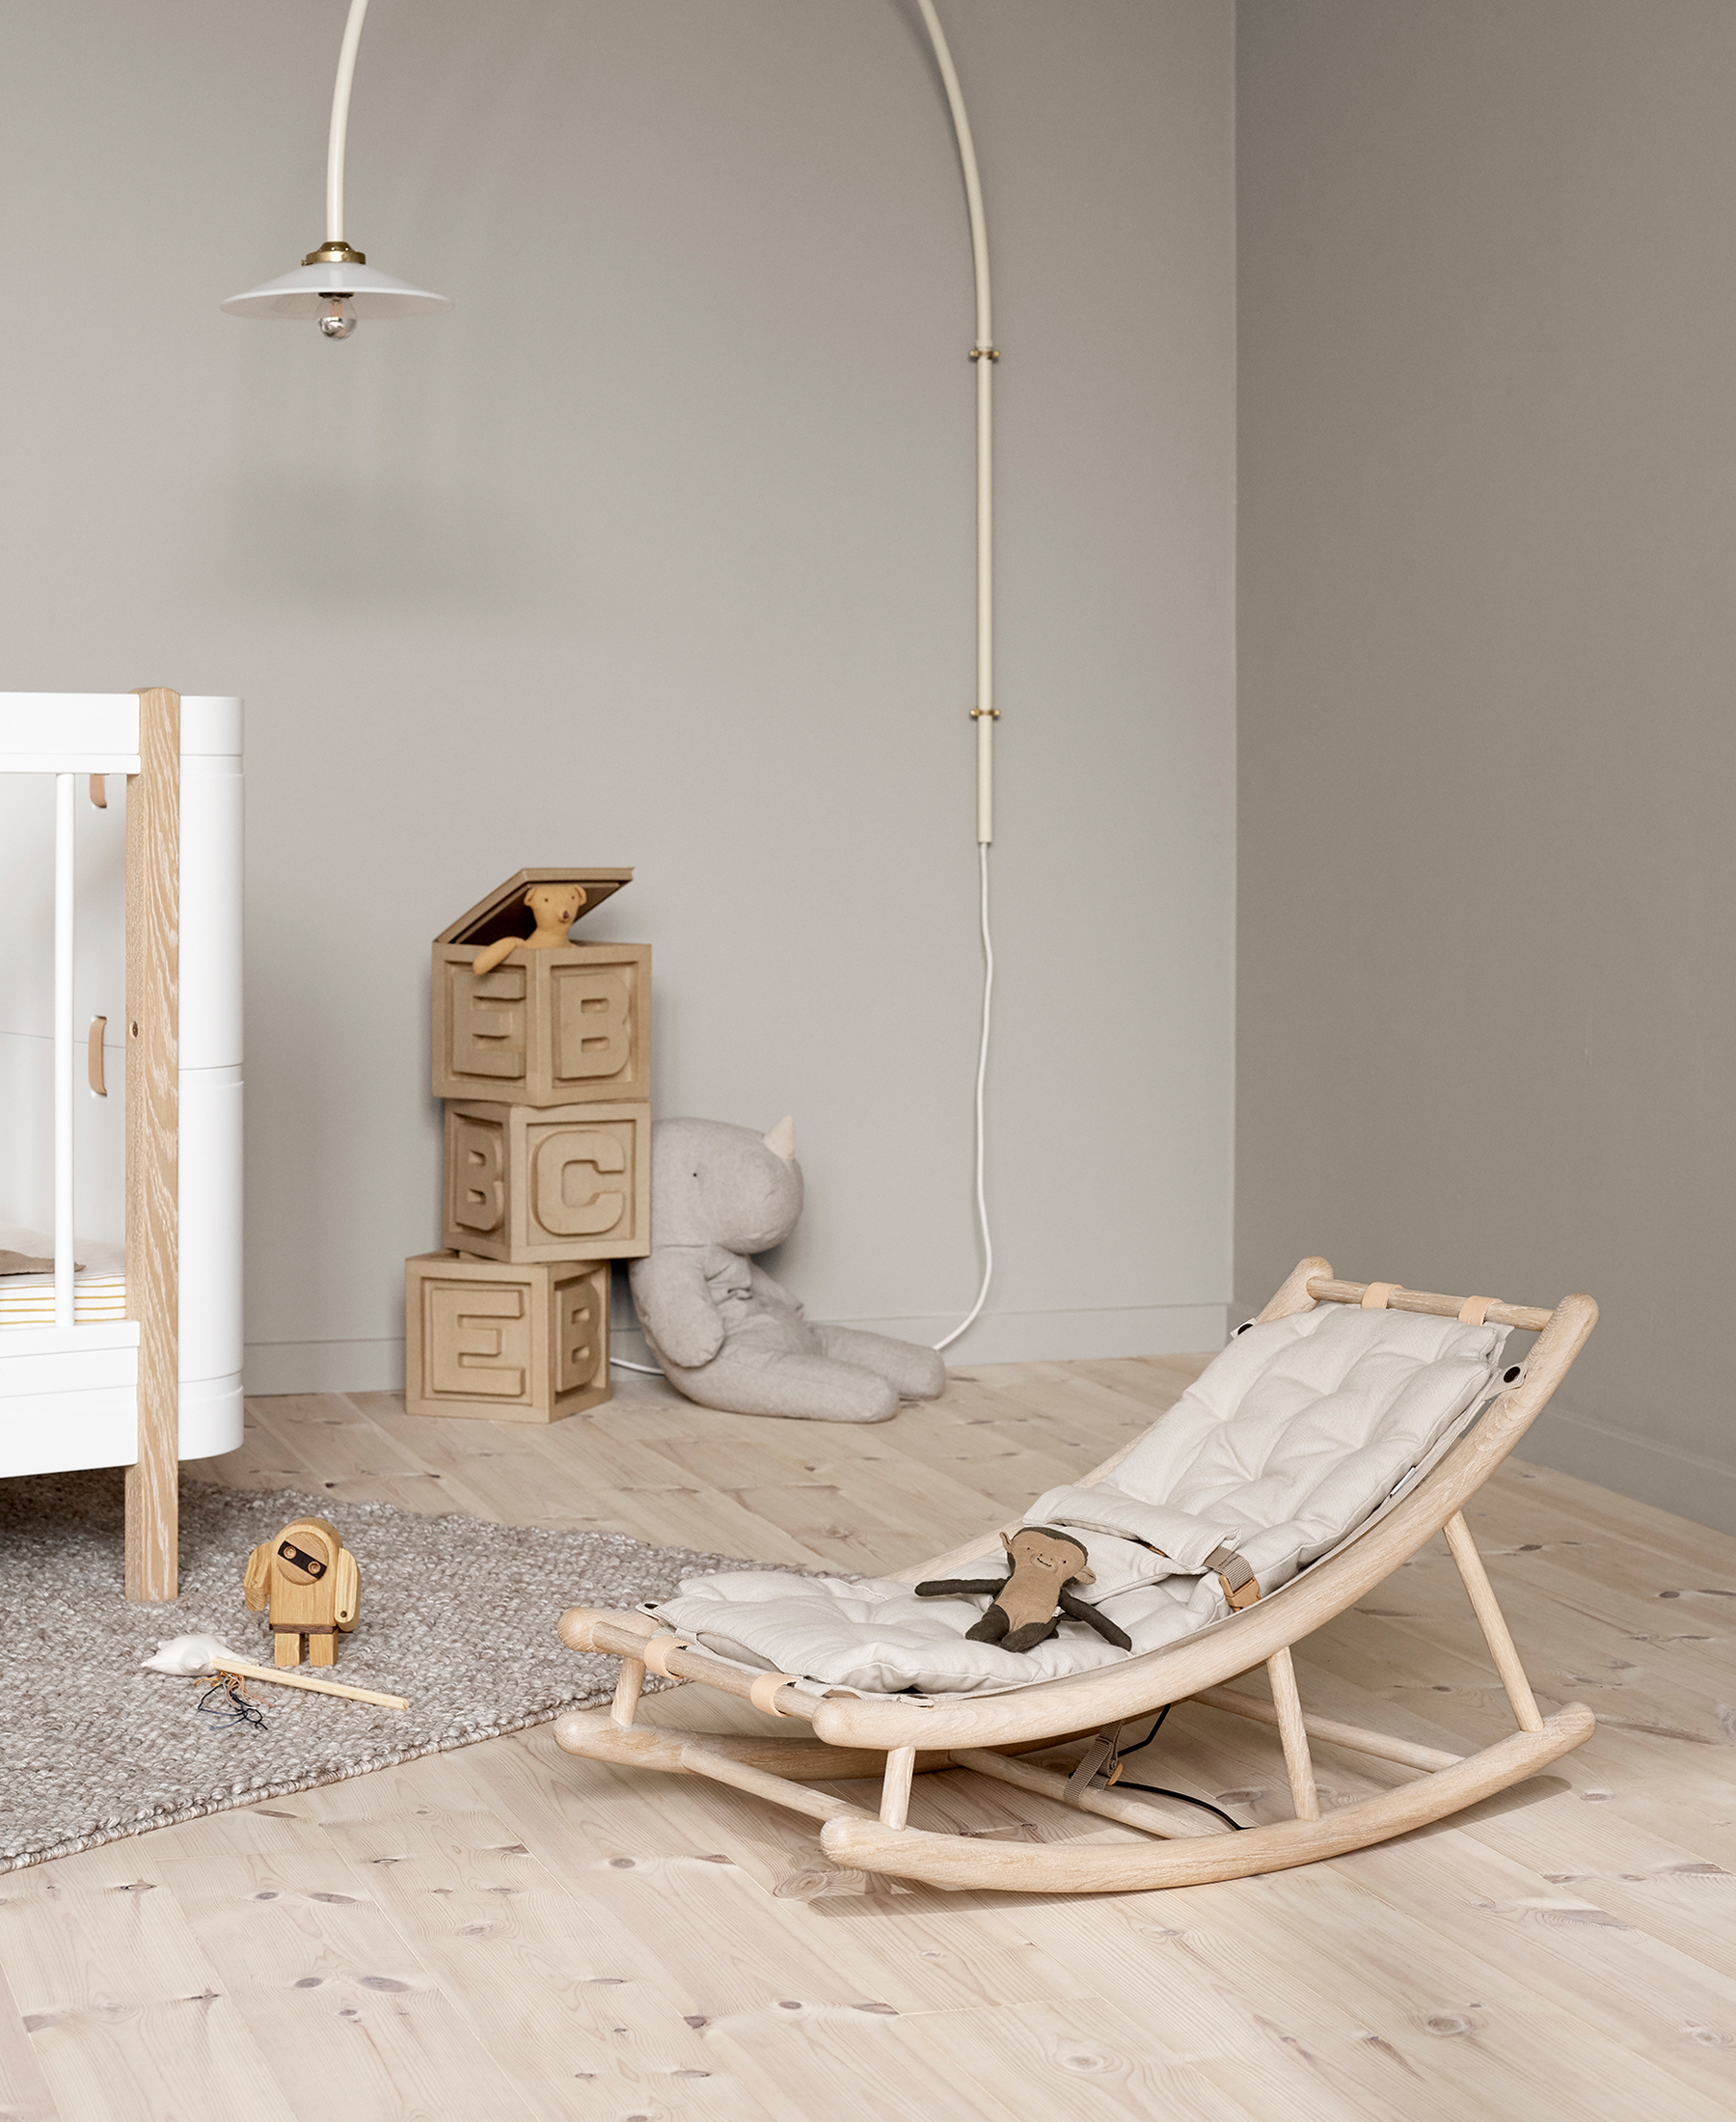 Wood baby & toddler rocker, oak/nature – Oliver Furniture Com